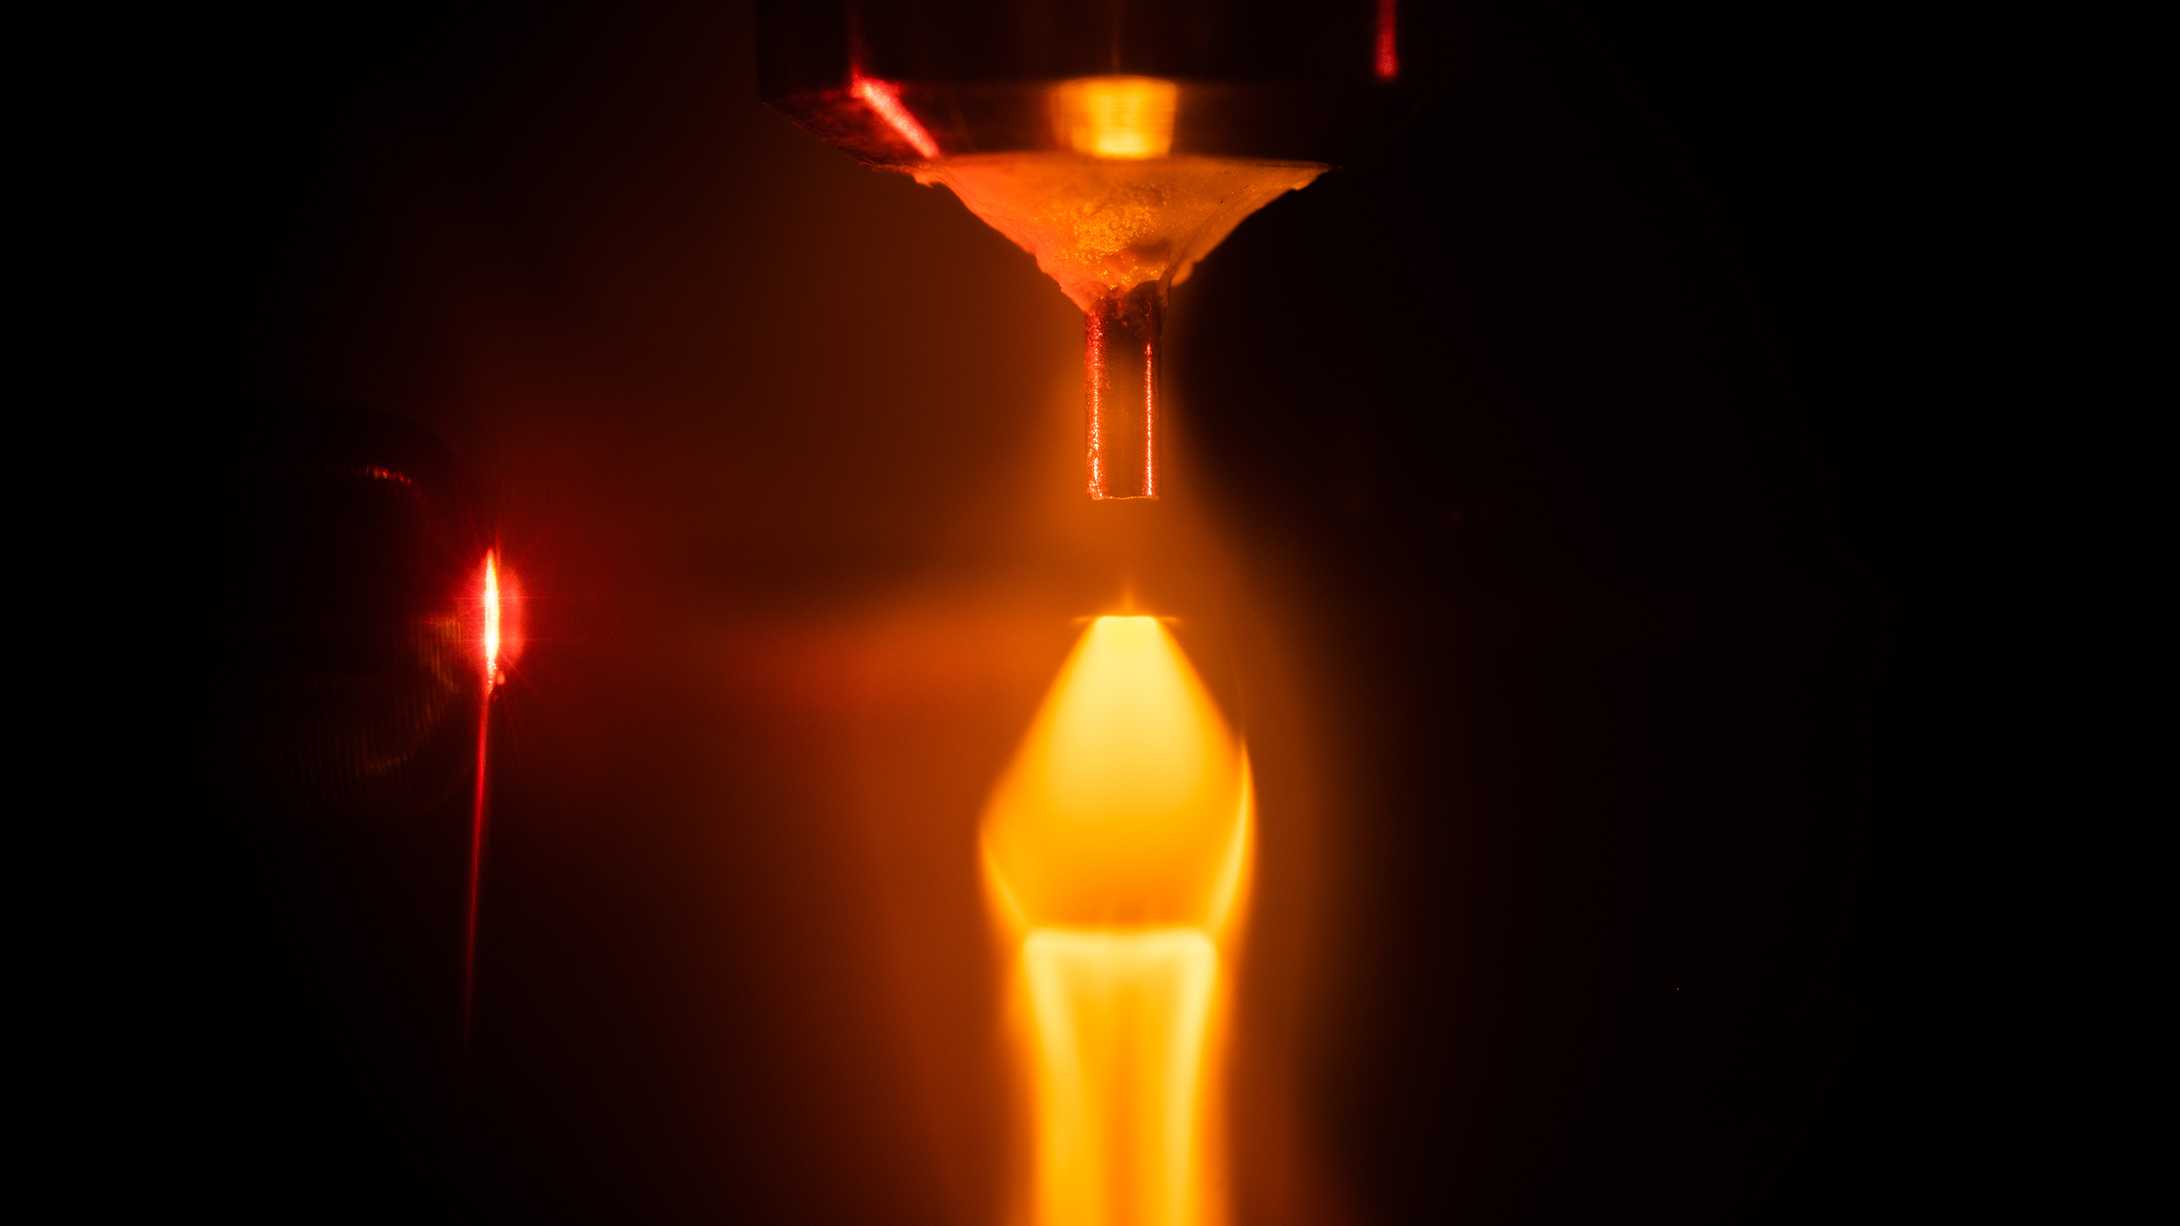 Intense laser generating glowing plasma in a gas